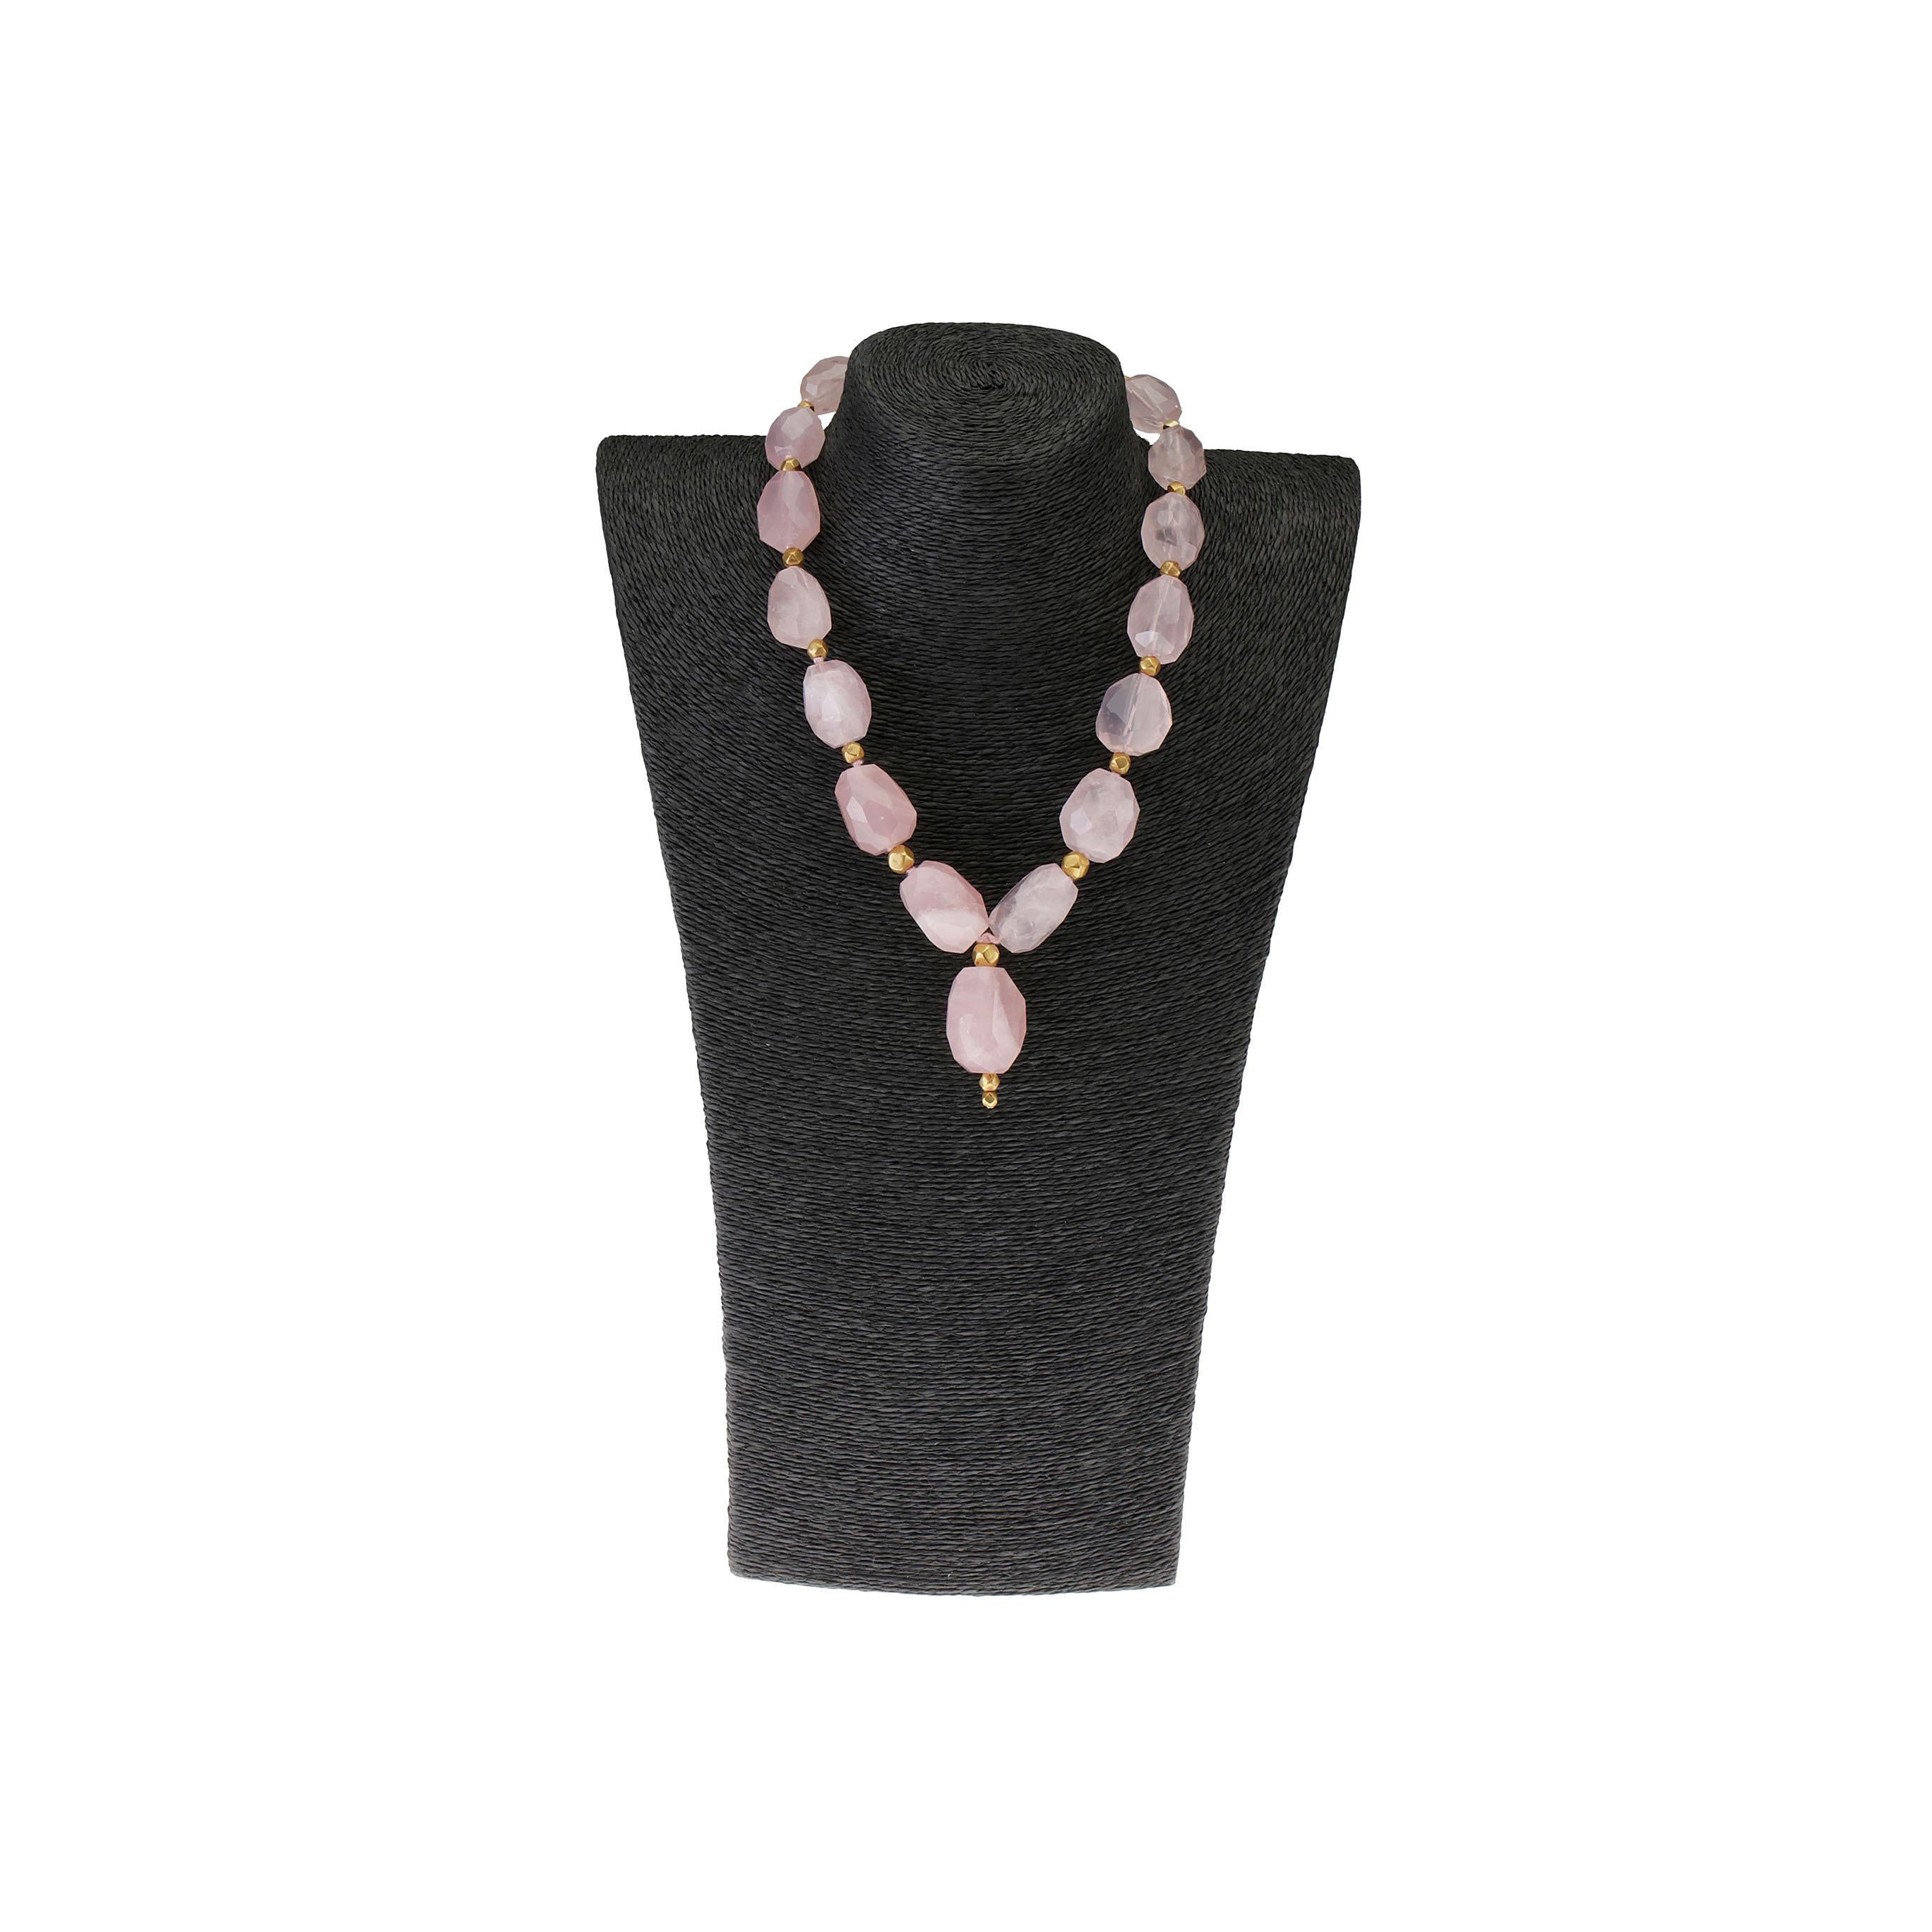 Amazing rose quartz and Indian Gold beads necklace 18k gold gr. 6,90.
Tous les bijoux Giulia Colussi sont neufs et n'ont jamais été portés ou possédés auparavant. Chaque article arrivera à votre porte joliment emballé dans nos boîtes, placé dans une